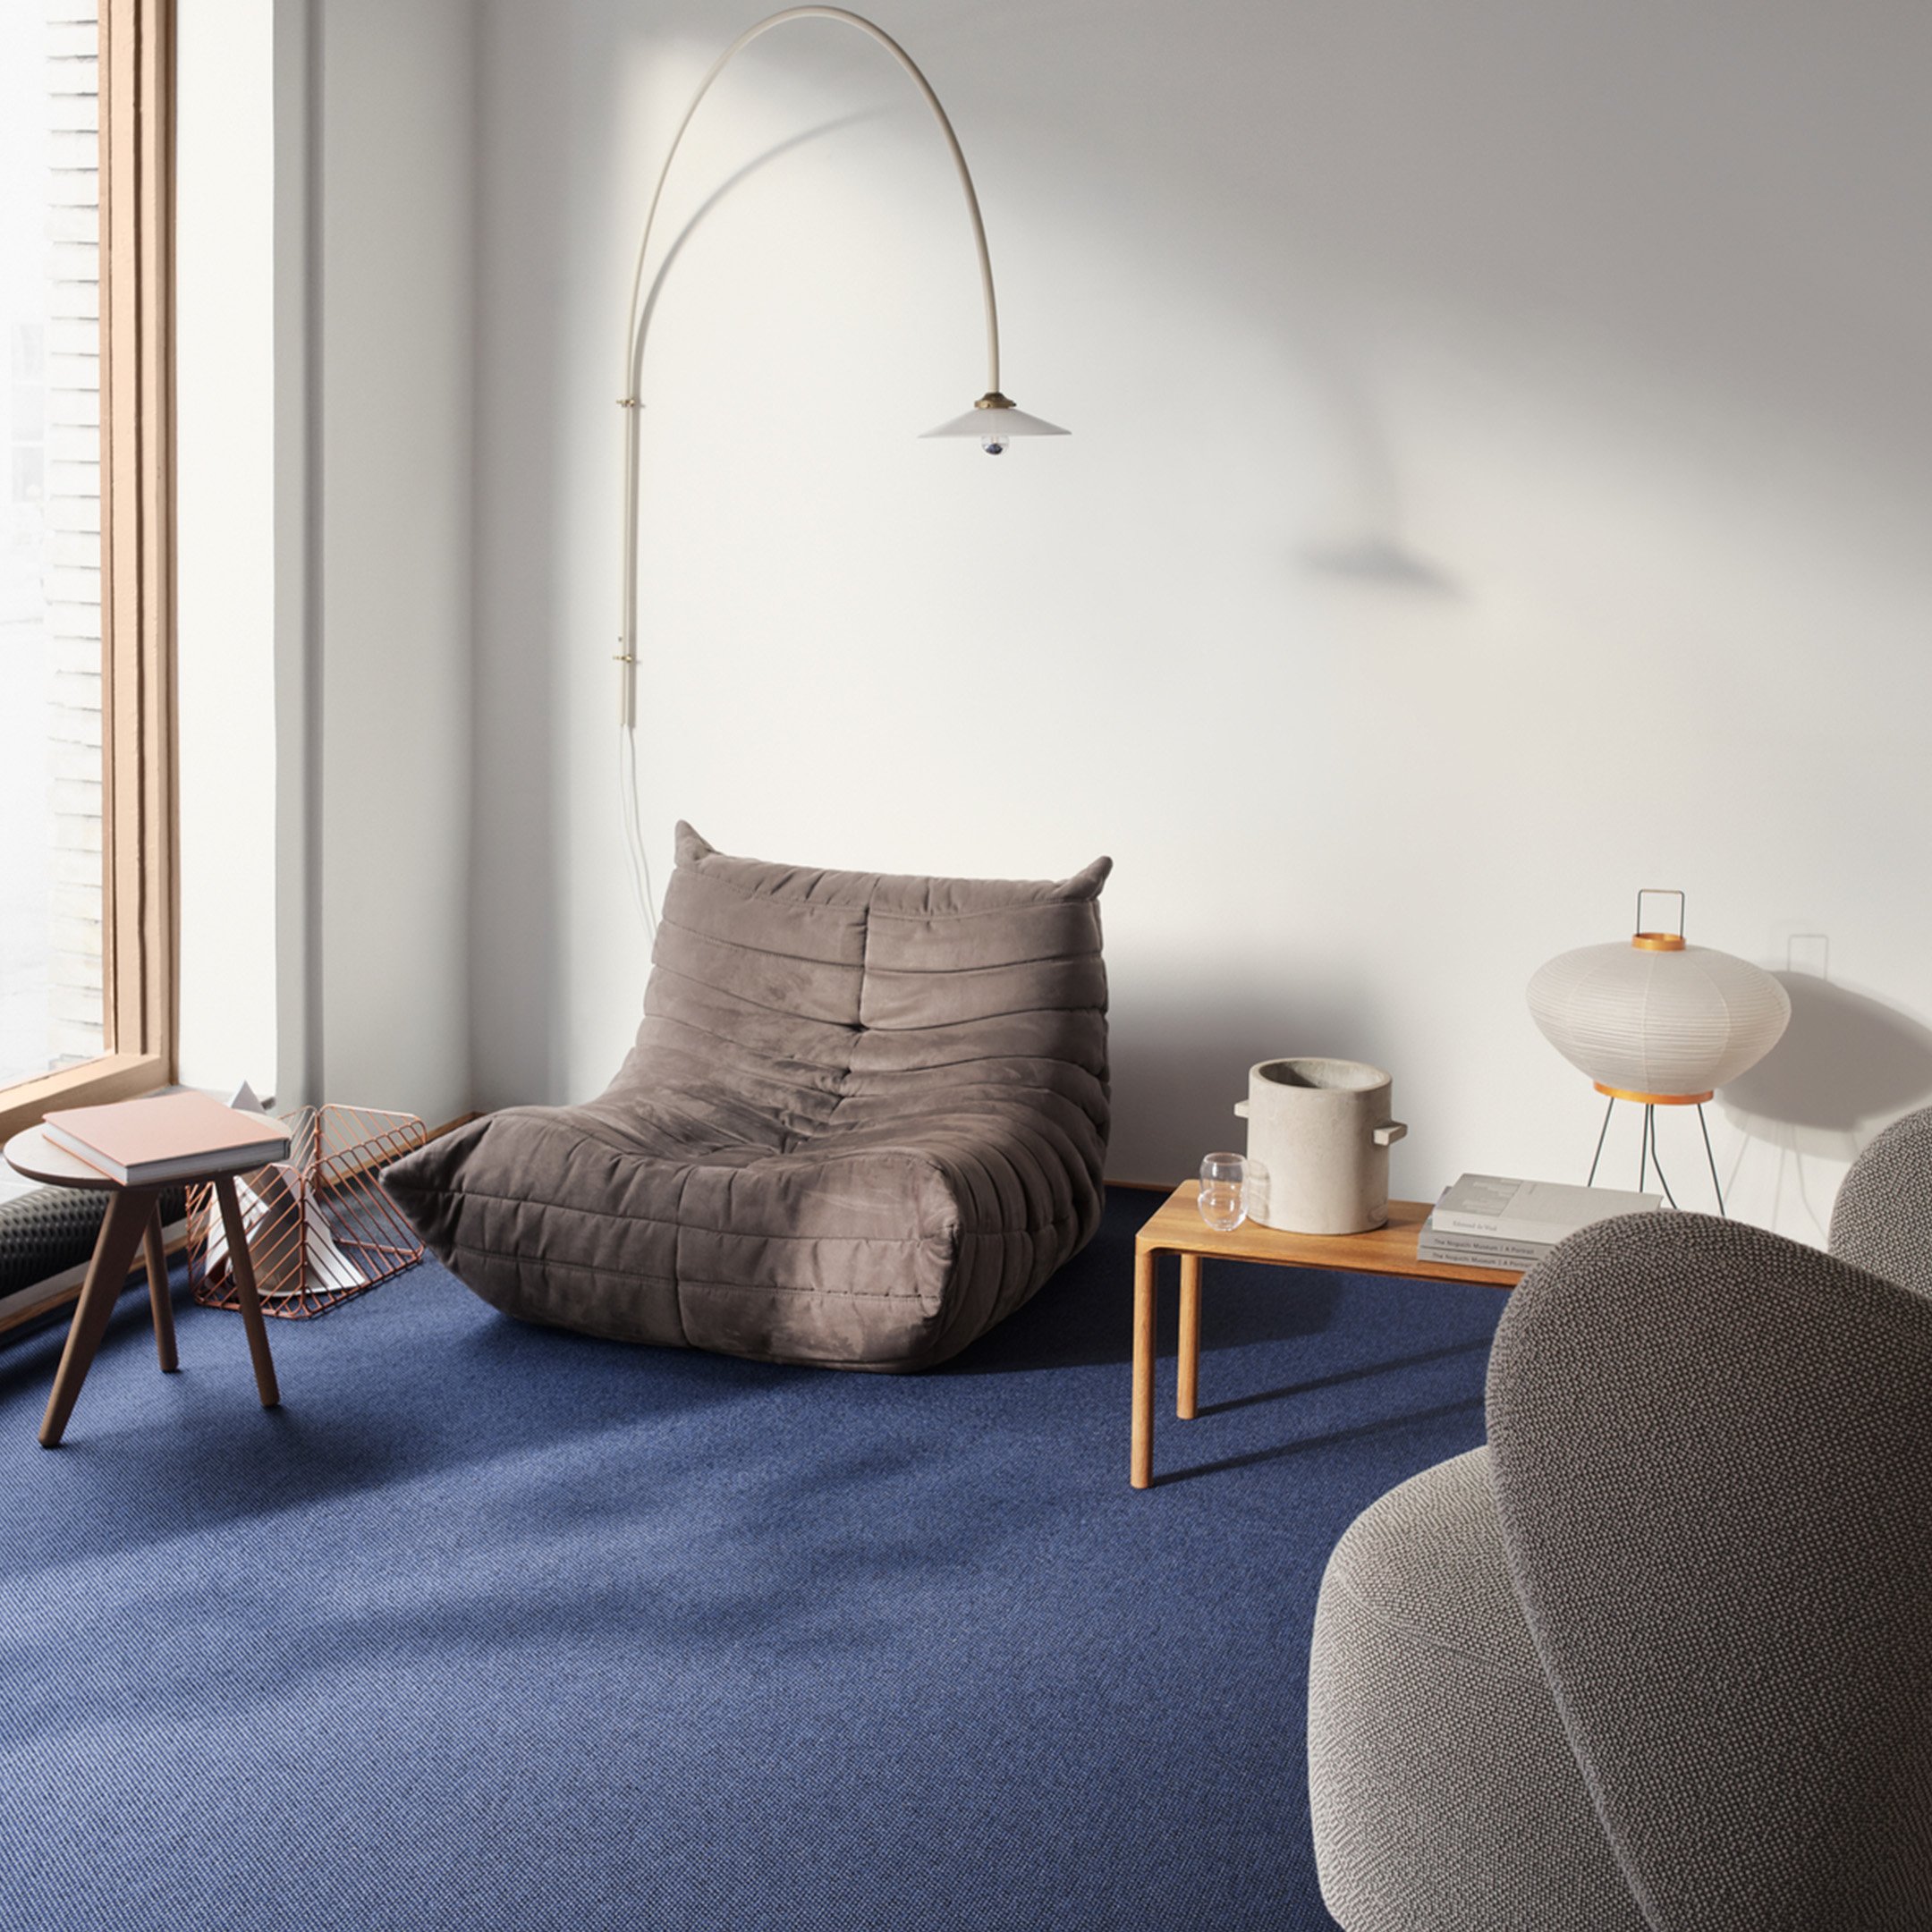 Sininen Ege Carpetsin Eco-tekstiililattia tilassa, jossa on lisäksi Ligne Rosetin klassikko Togo-sohva, jakkara, sivupöytä, sekä kaareva seinälamppu.